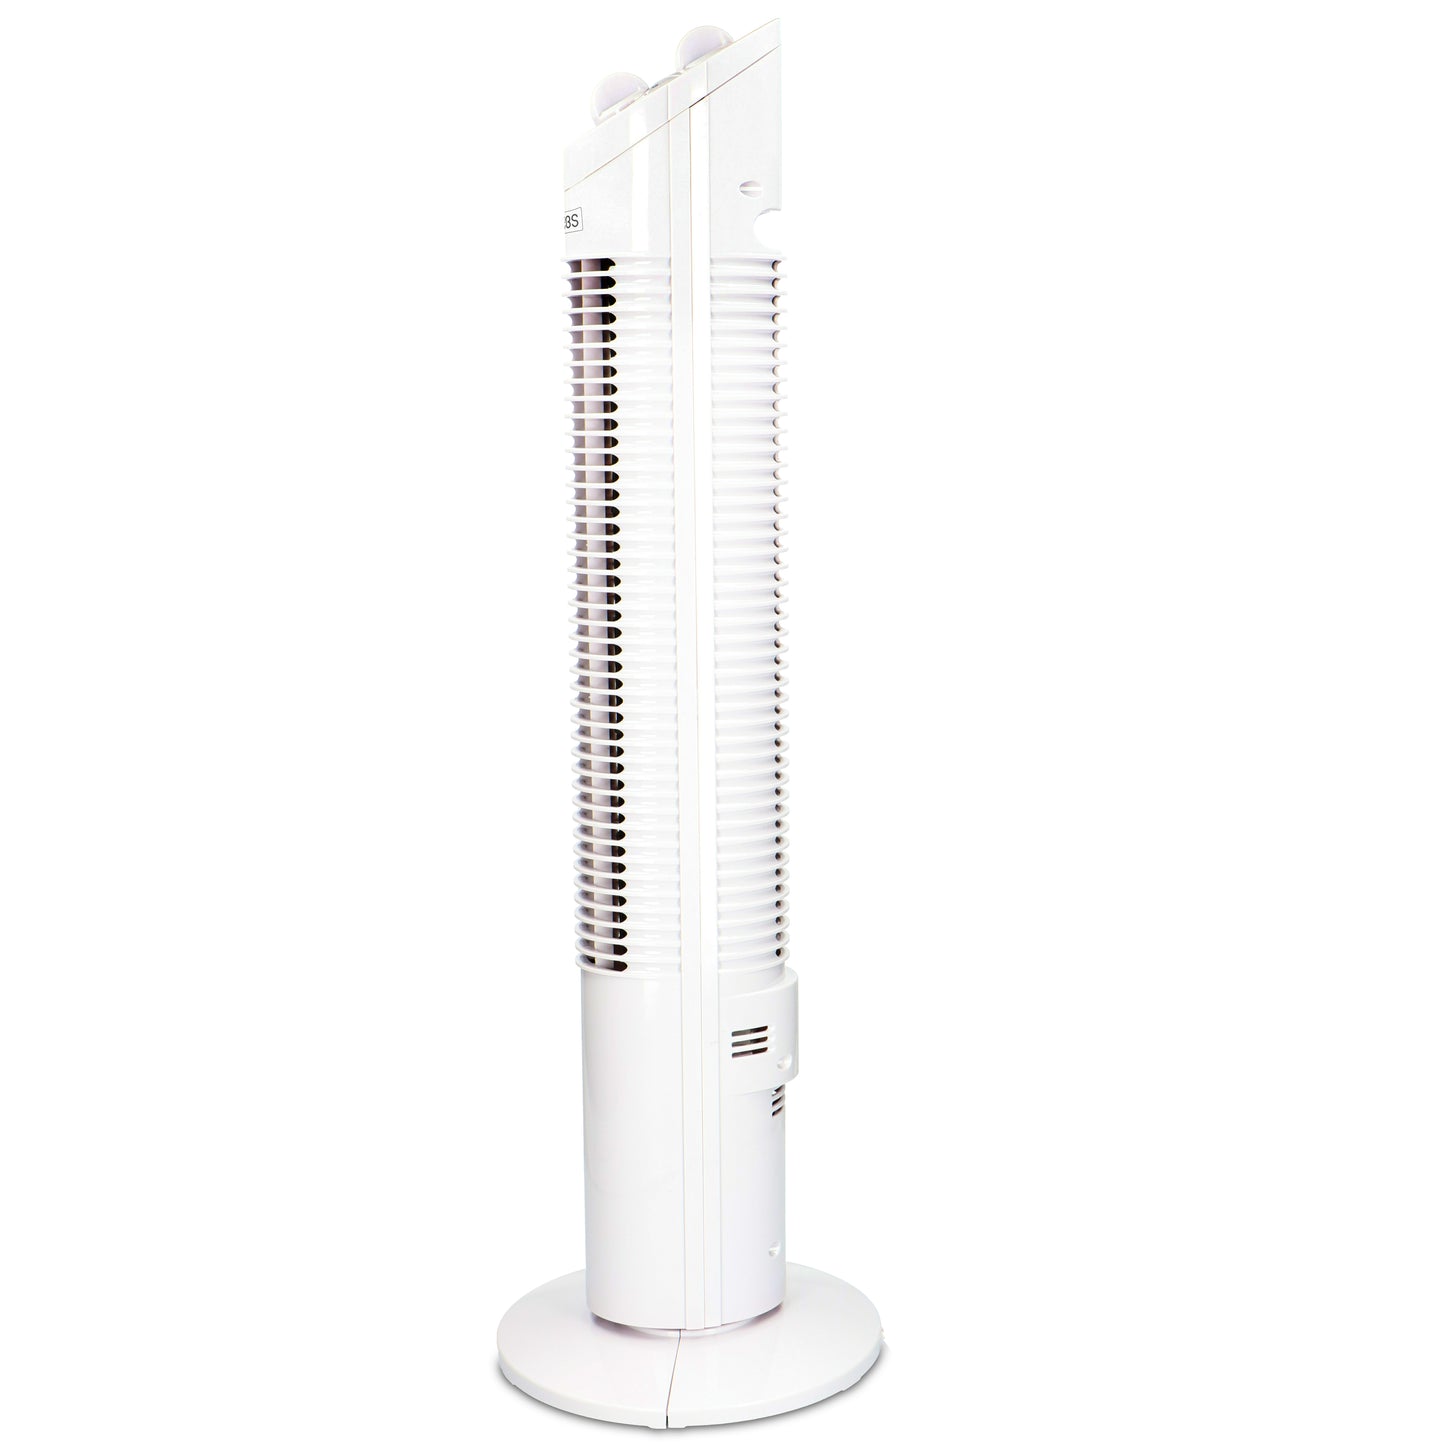 Trebs 99383 - Ventilateur climatique standard - Blanc